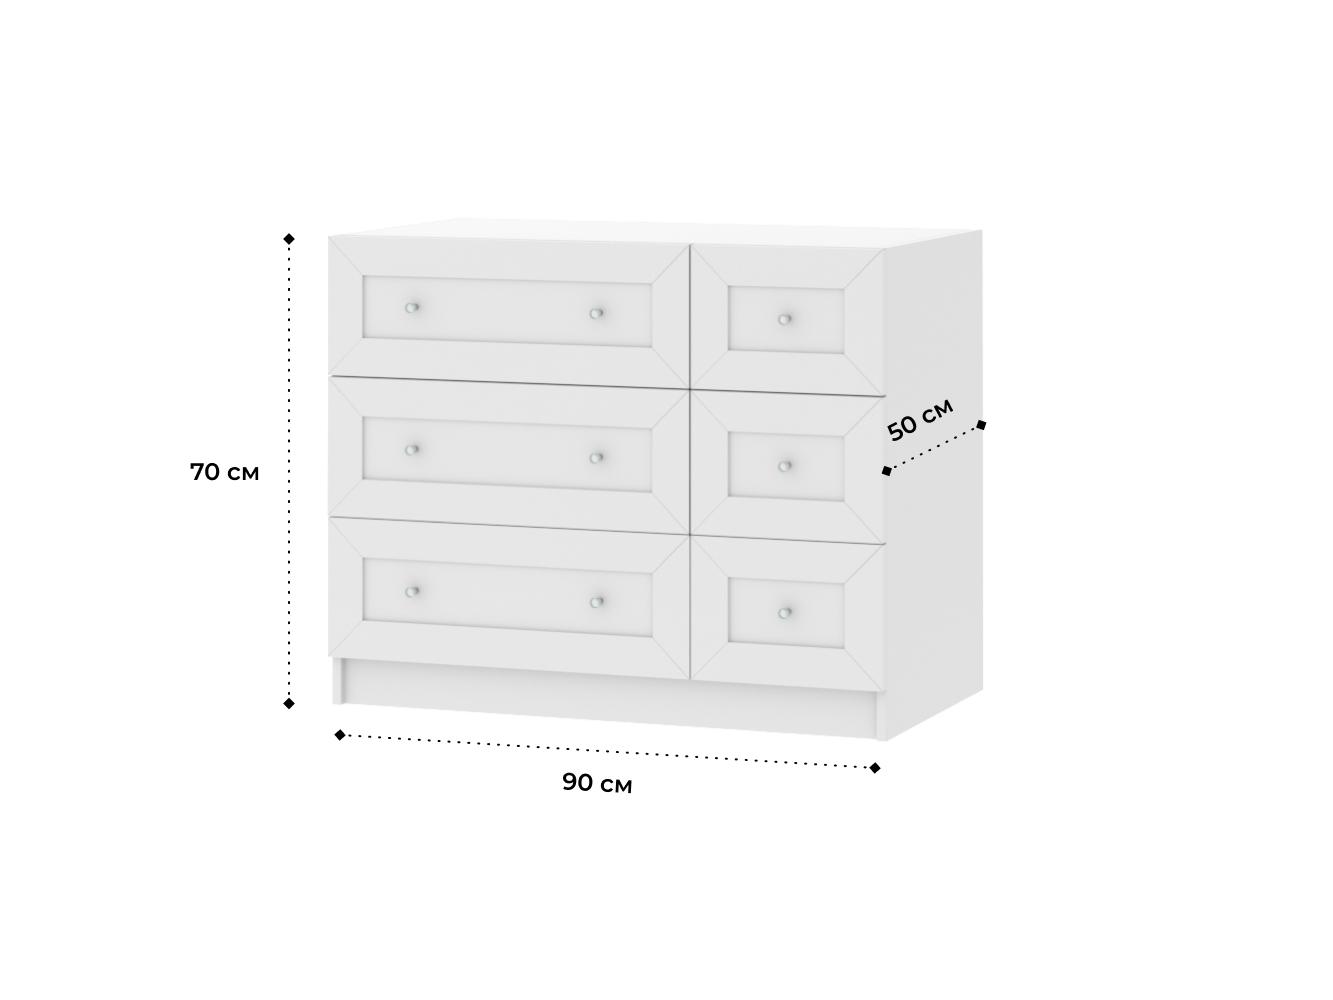 Комод Билли 217 white ИКЕА (IKEA) изображение товара